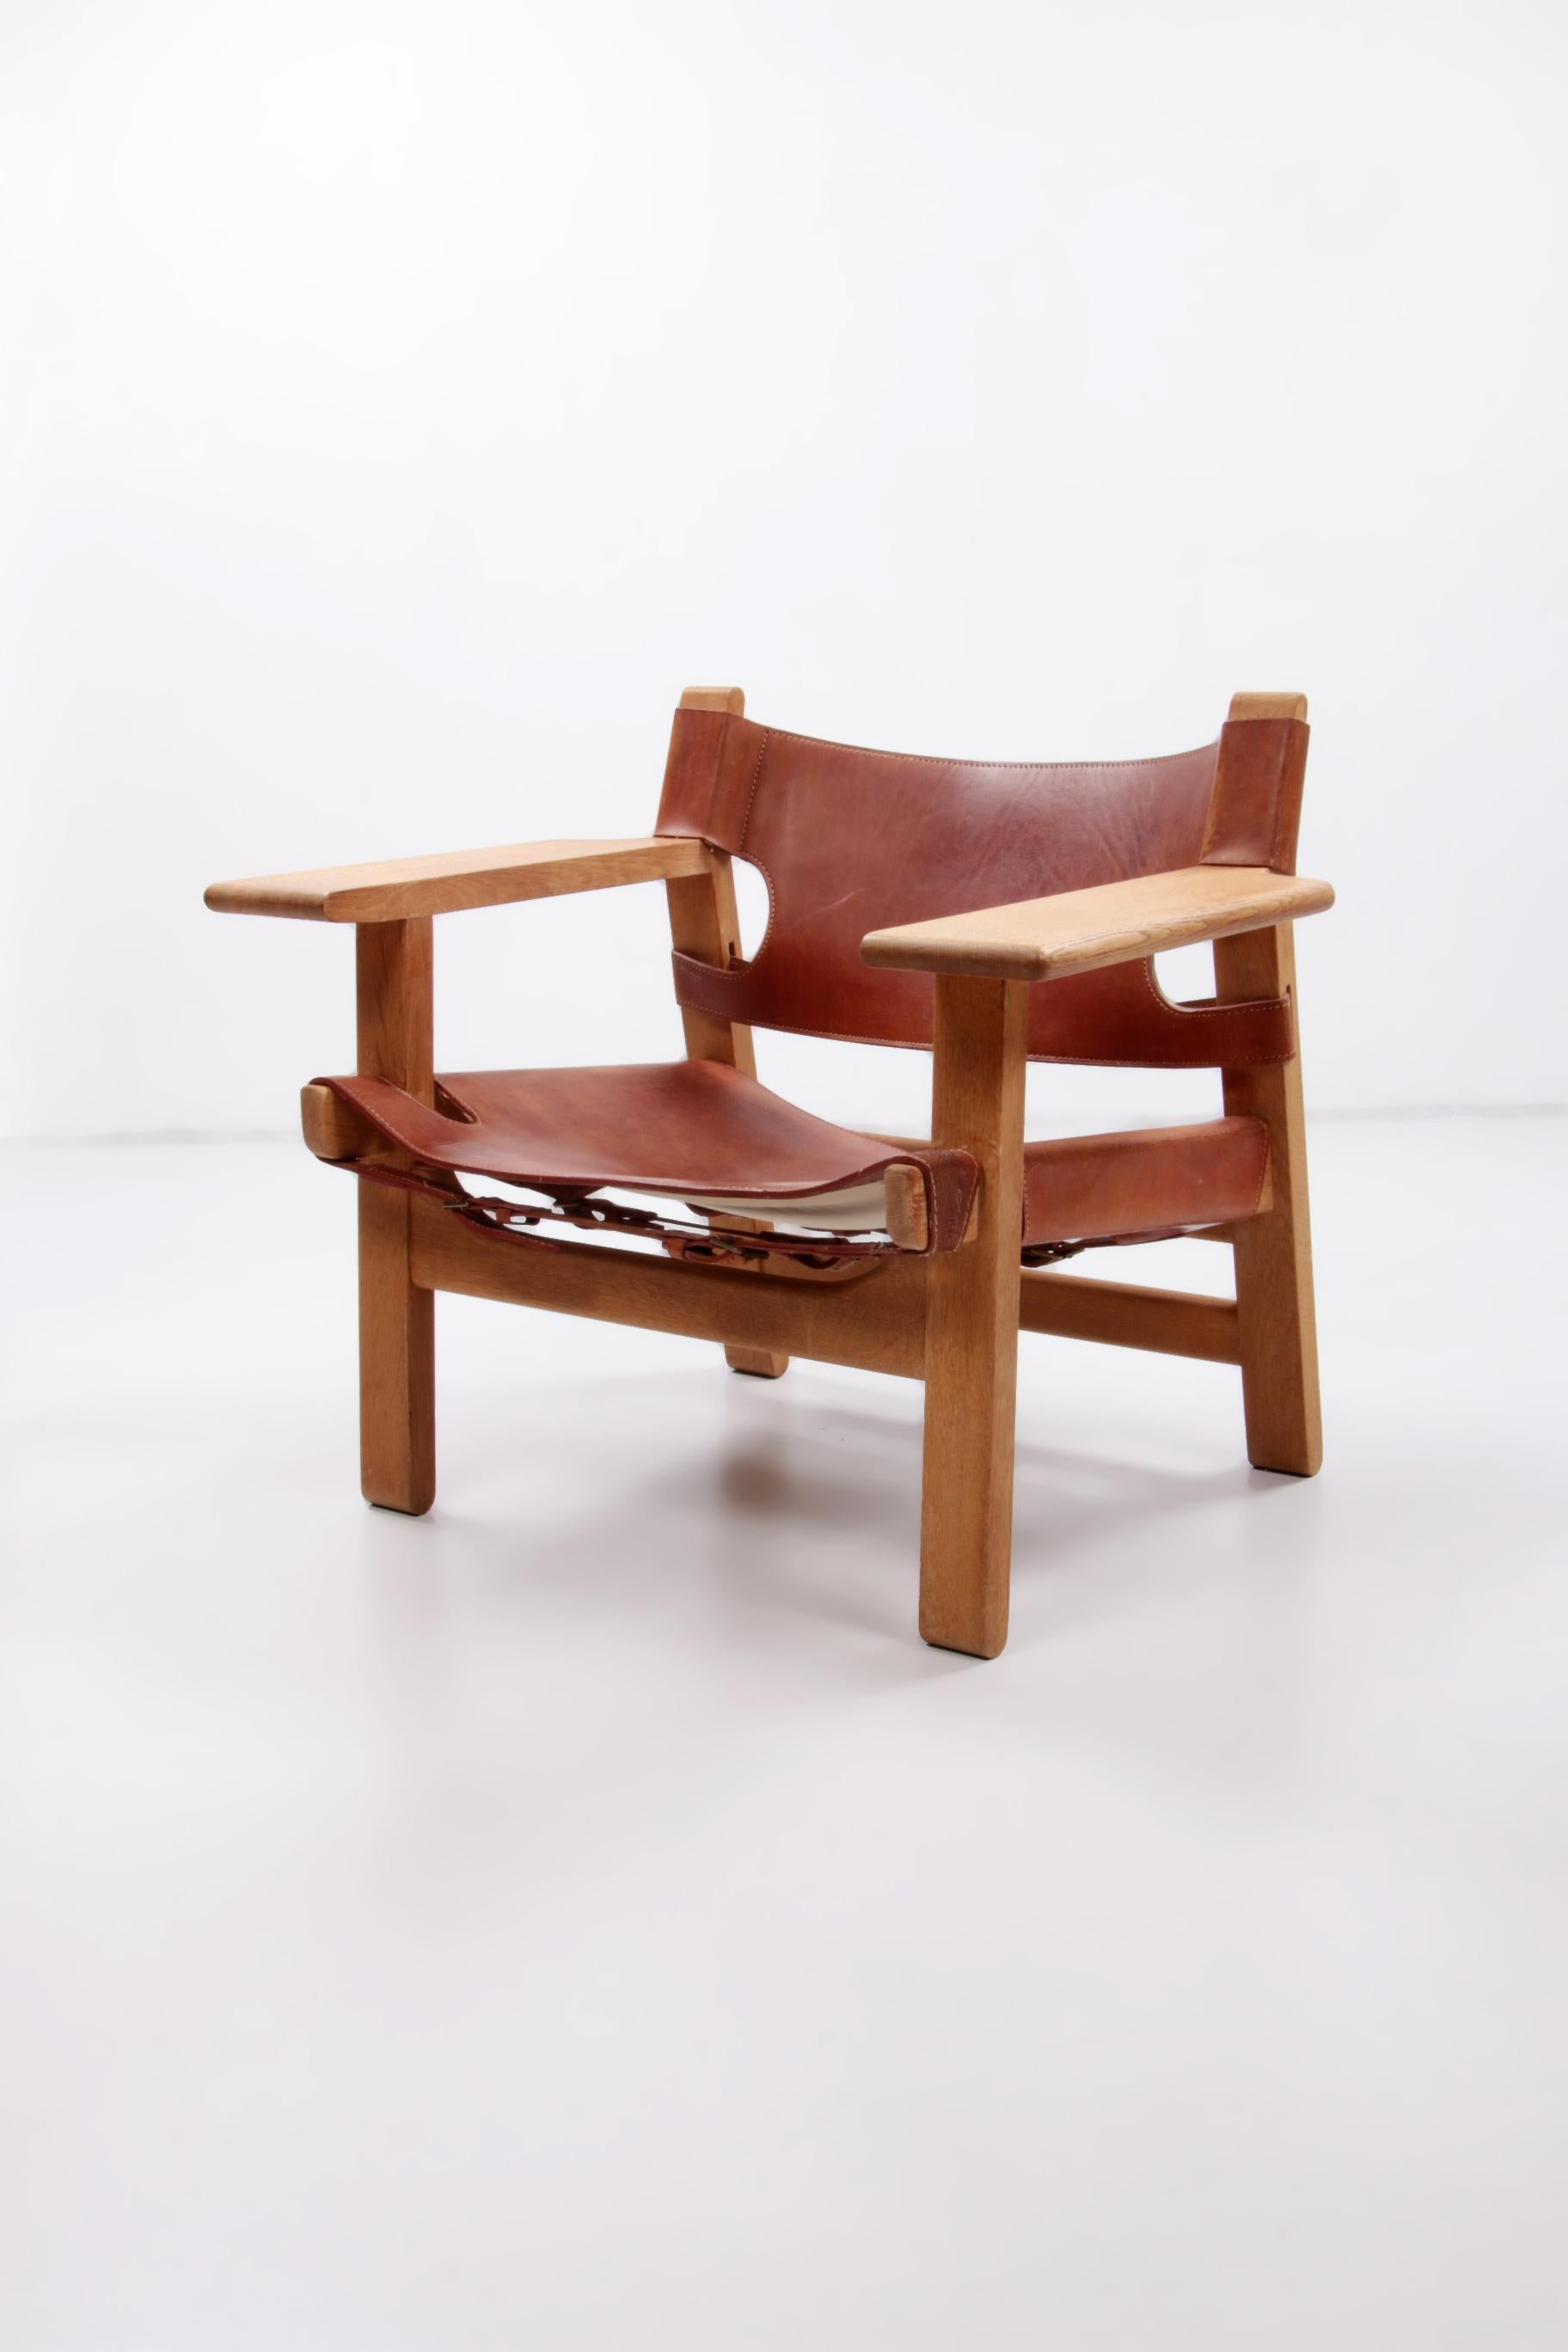 Design-Stuhl von Borge Mogensen, auch Spanischer Stuhl genannt, 1960 Dänemark.
Dieser Original-Safaristuhl wurde in den 1960er Jahren hergestellt und daher hat das Sattelleder eine schöne Patina, ein sehr robustes Modell mit Eichengestell. Nur ein